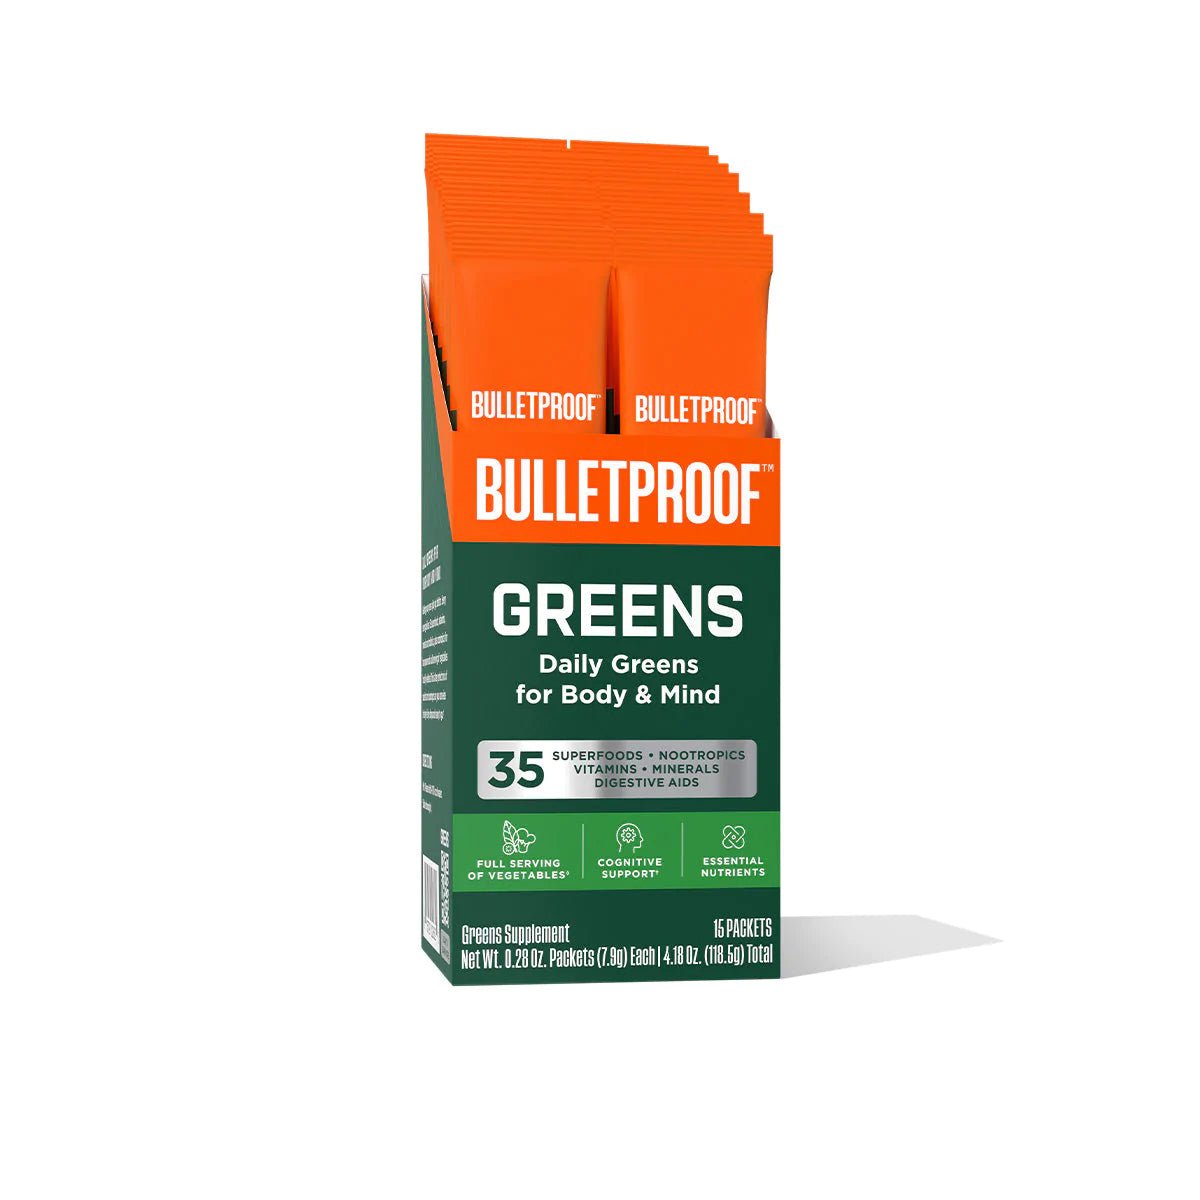 Bulletproof GREENS 15パック入り 35種類のスーパーフードサプリメント(粉状) - HAPIVERI